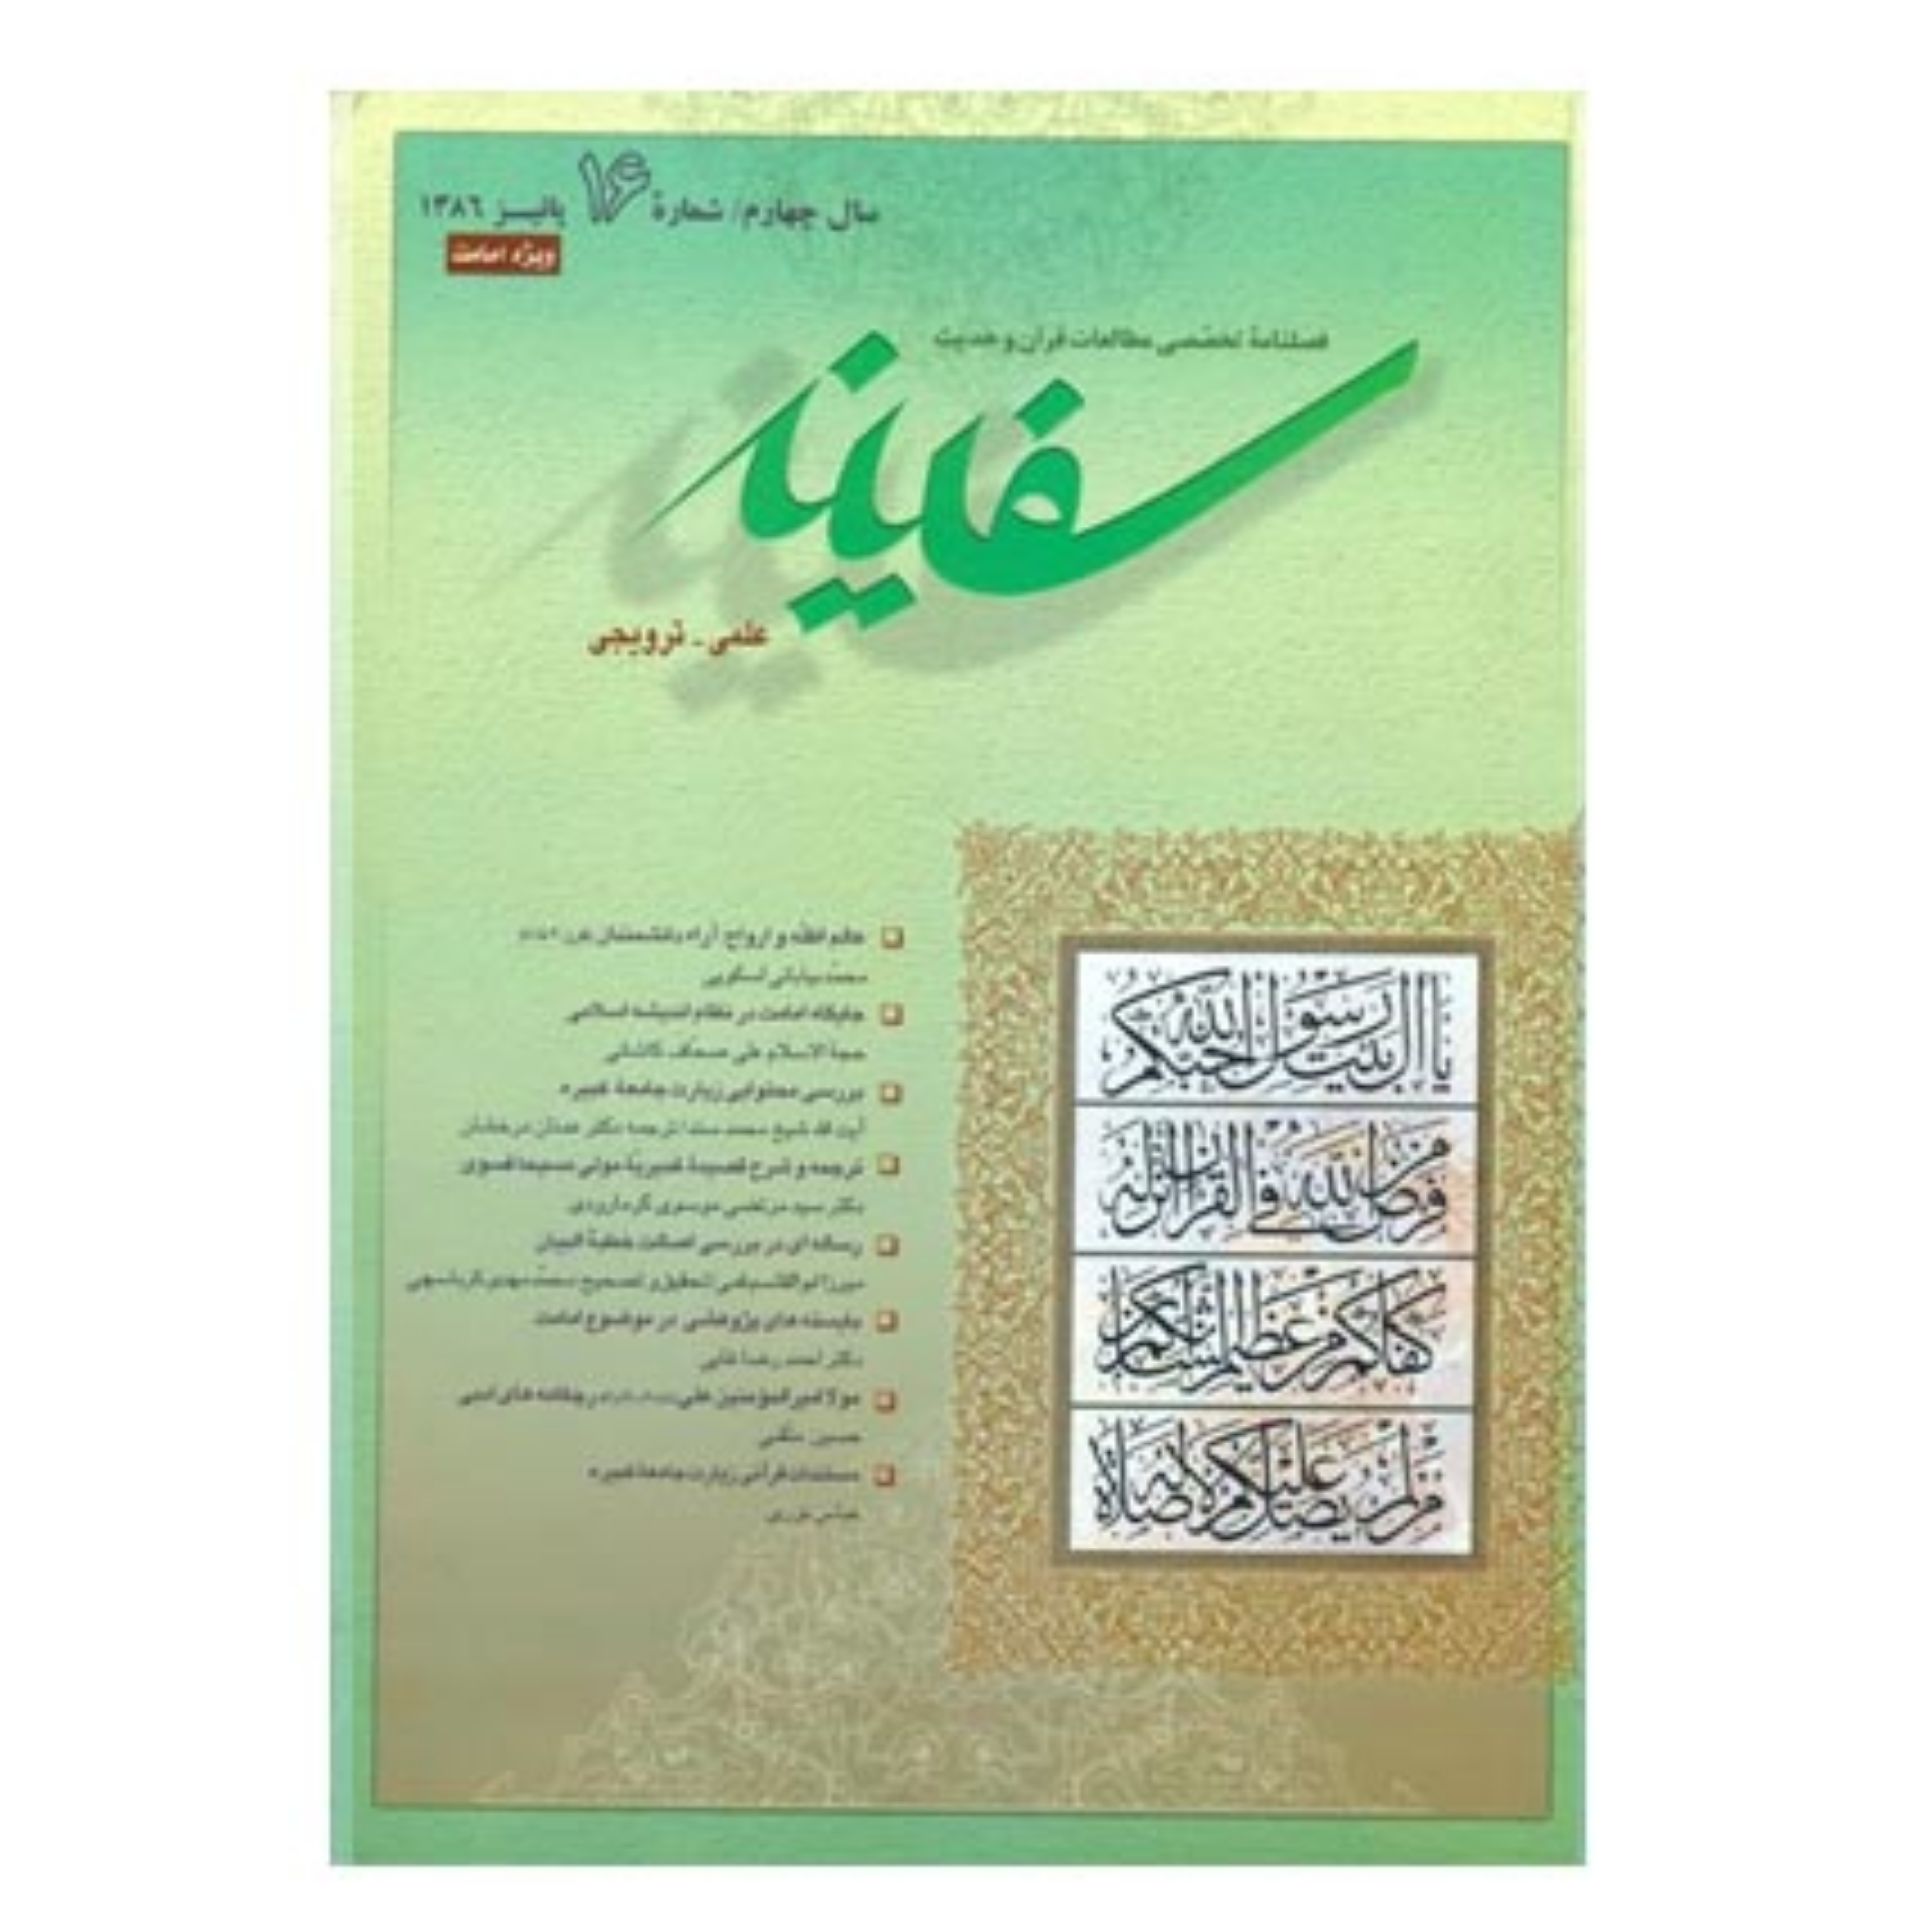 فصلنامه تخصصی مطالعات قرآن و حدیث سفینه/ جلد 16